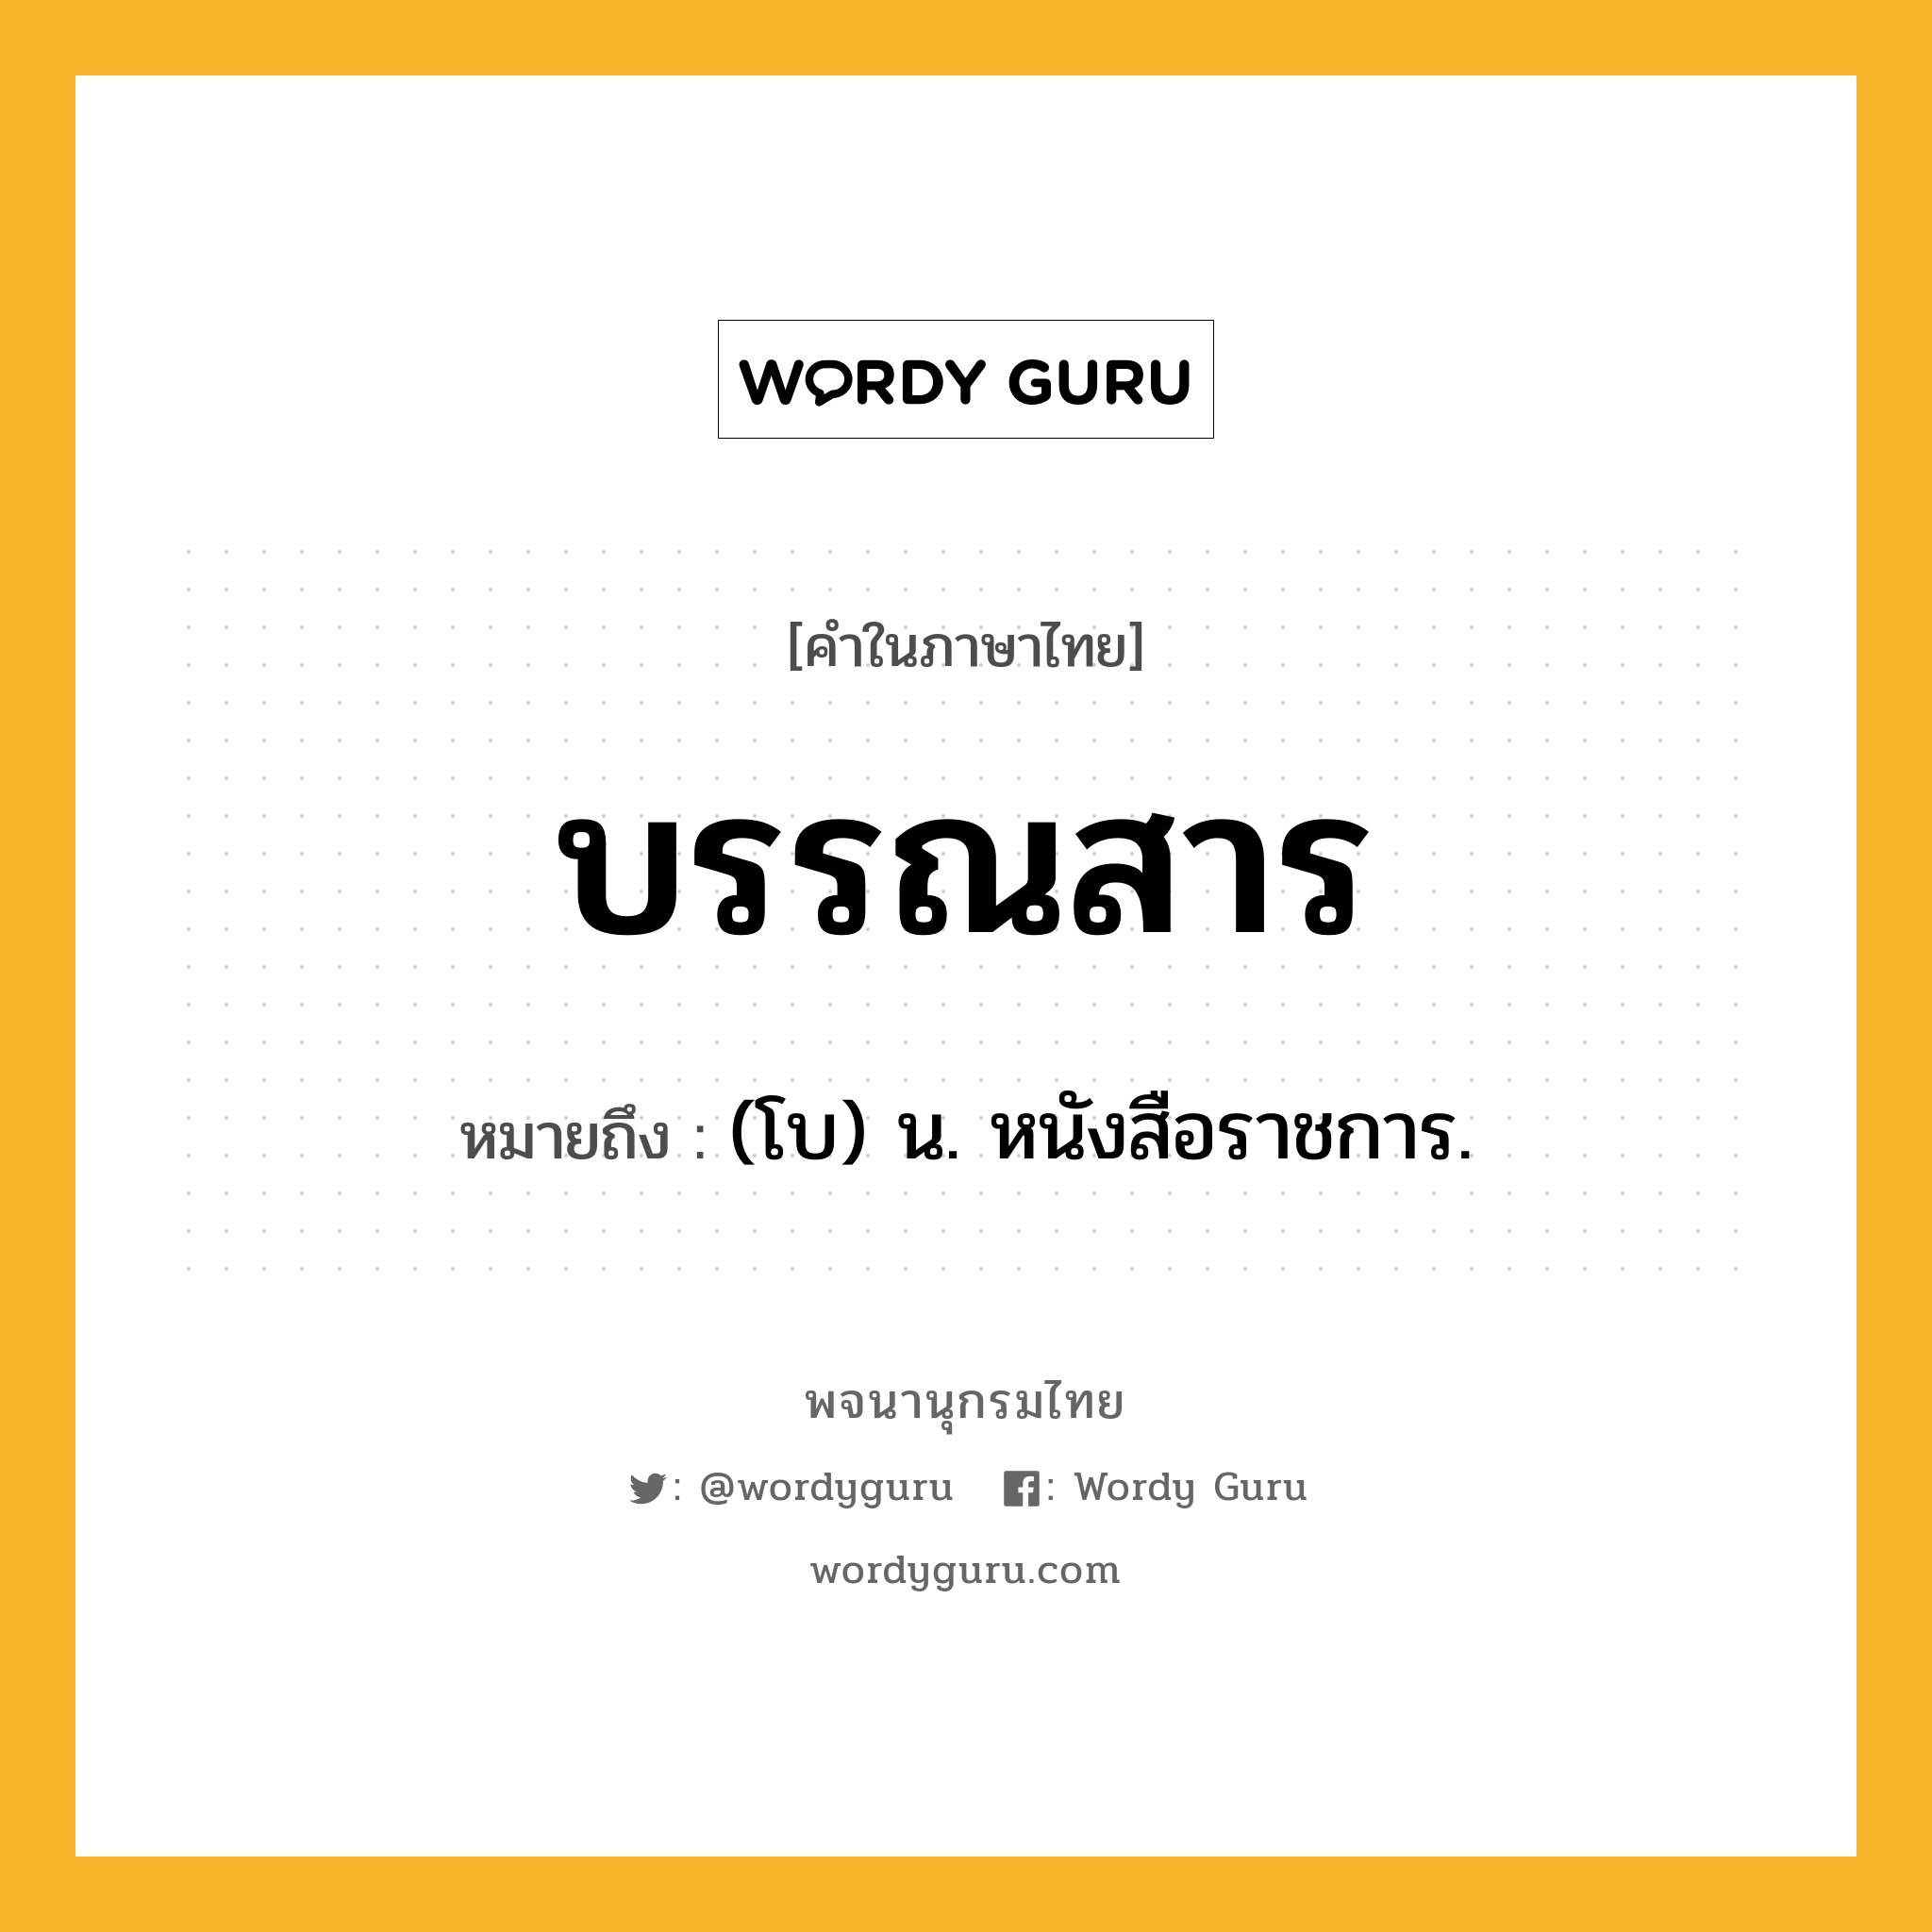 บรรณสาร ความหมาย หมายถึงอะไร?, คำในภาษาไทย บรรณสาร หมายถึง (โบ) น. หนังสือราชการ.